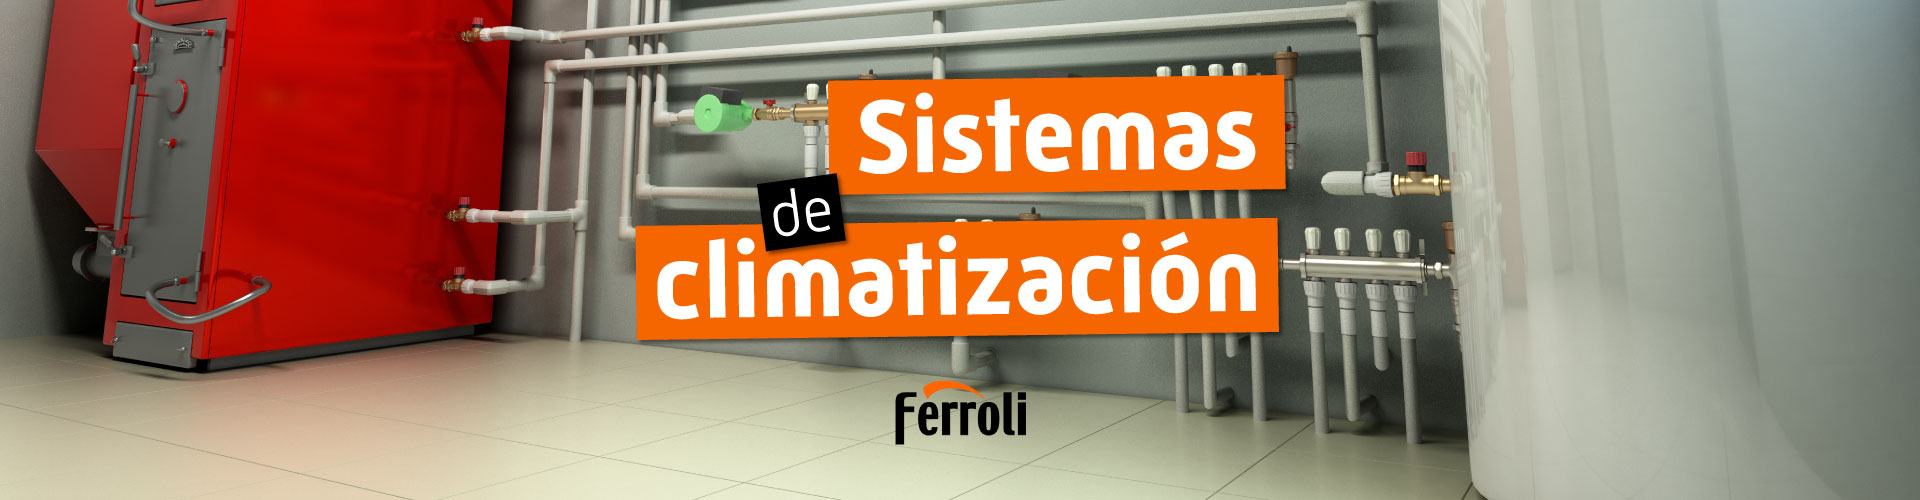 Clmatización con Ferroli